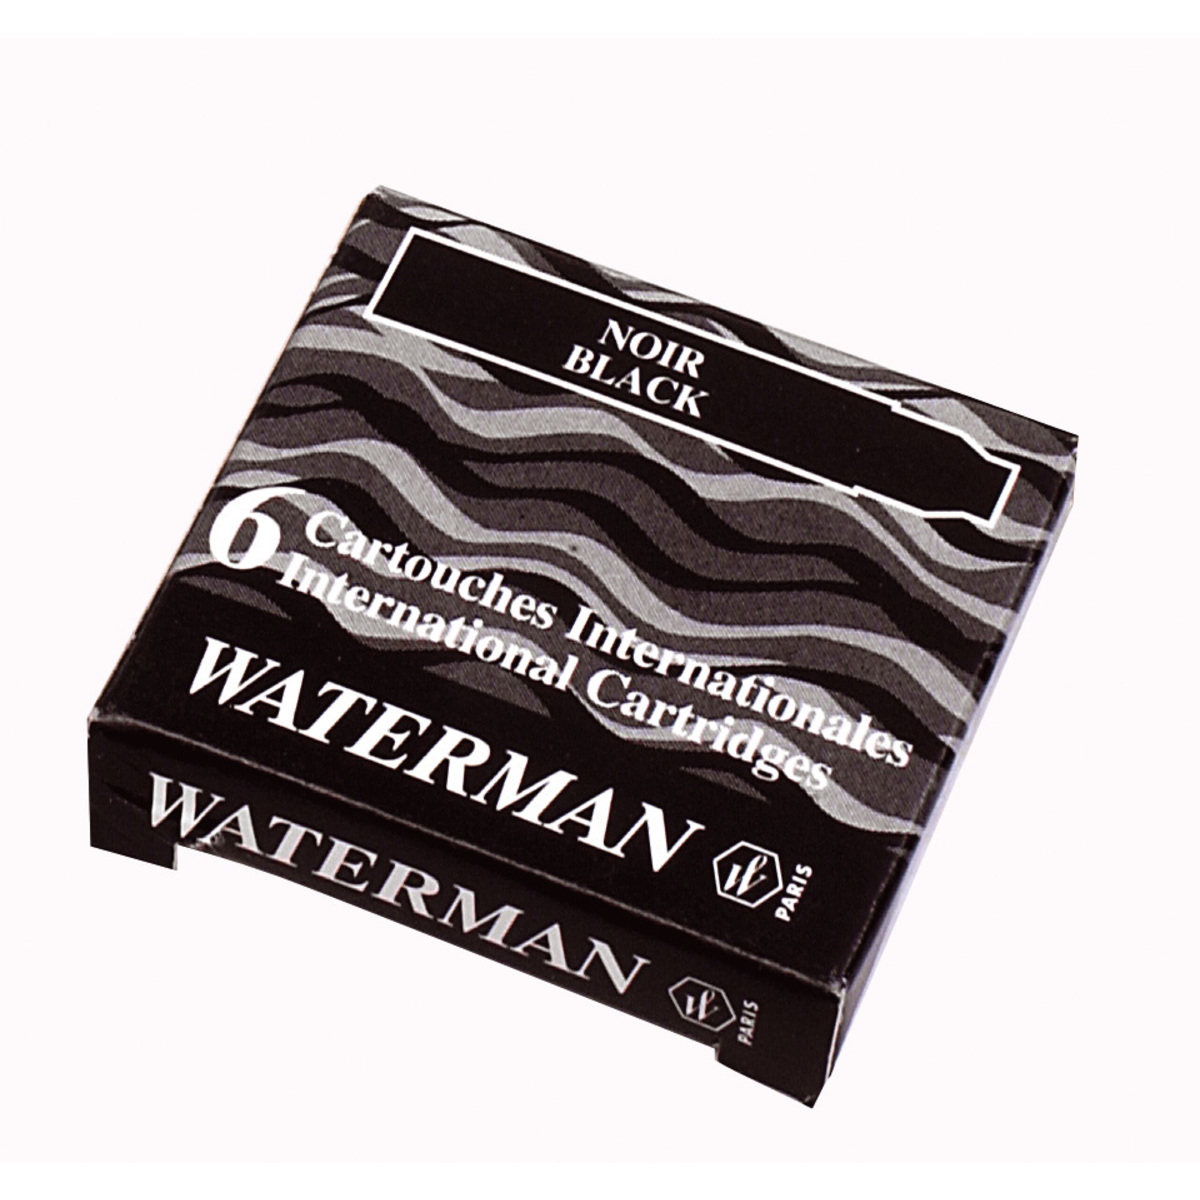 Waterman Etui de 8 cartouches standard encre noire - prix pas cher